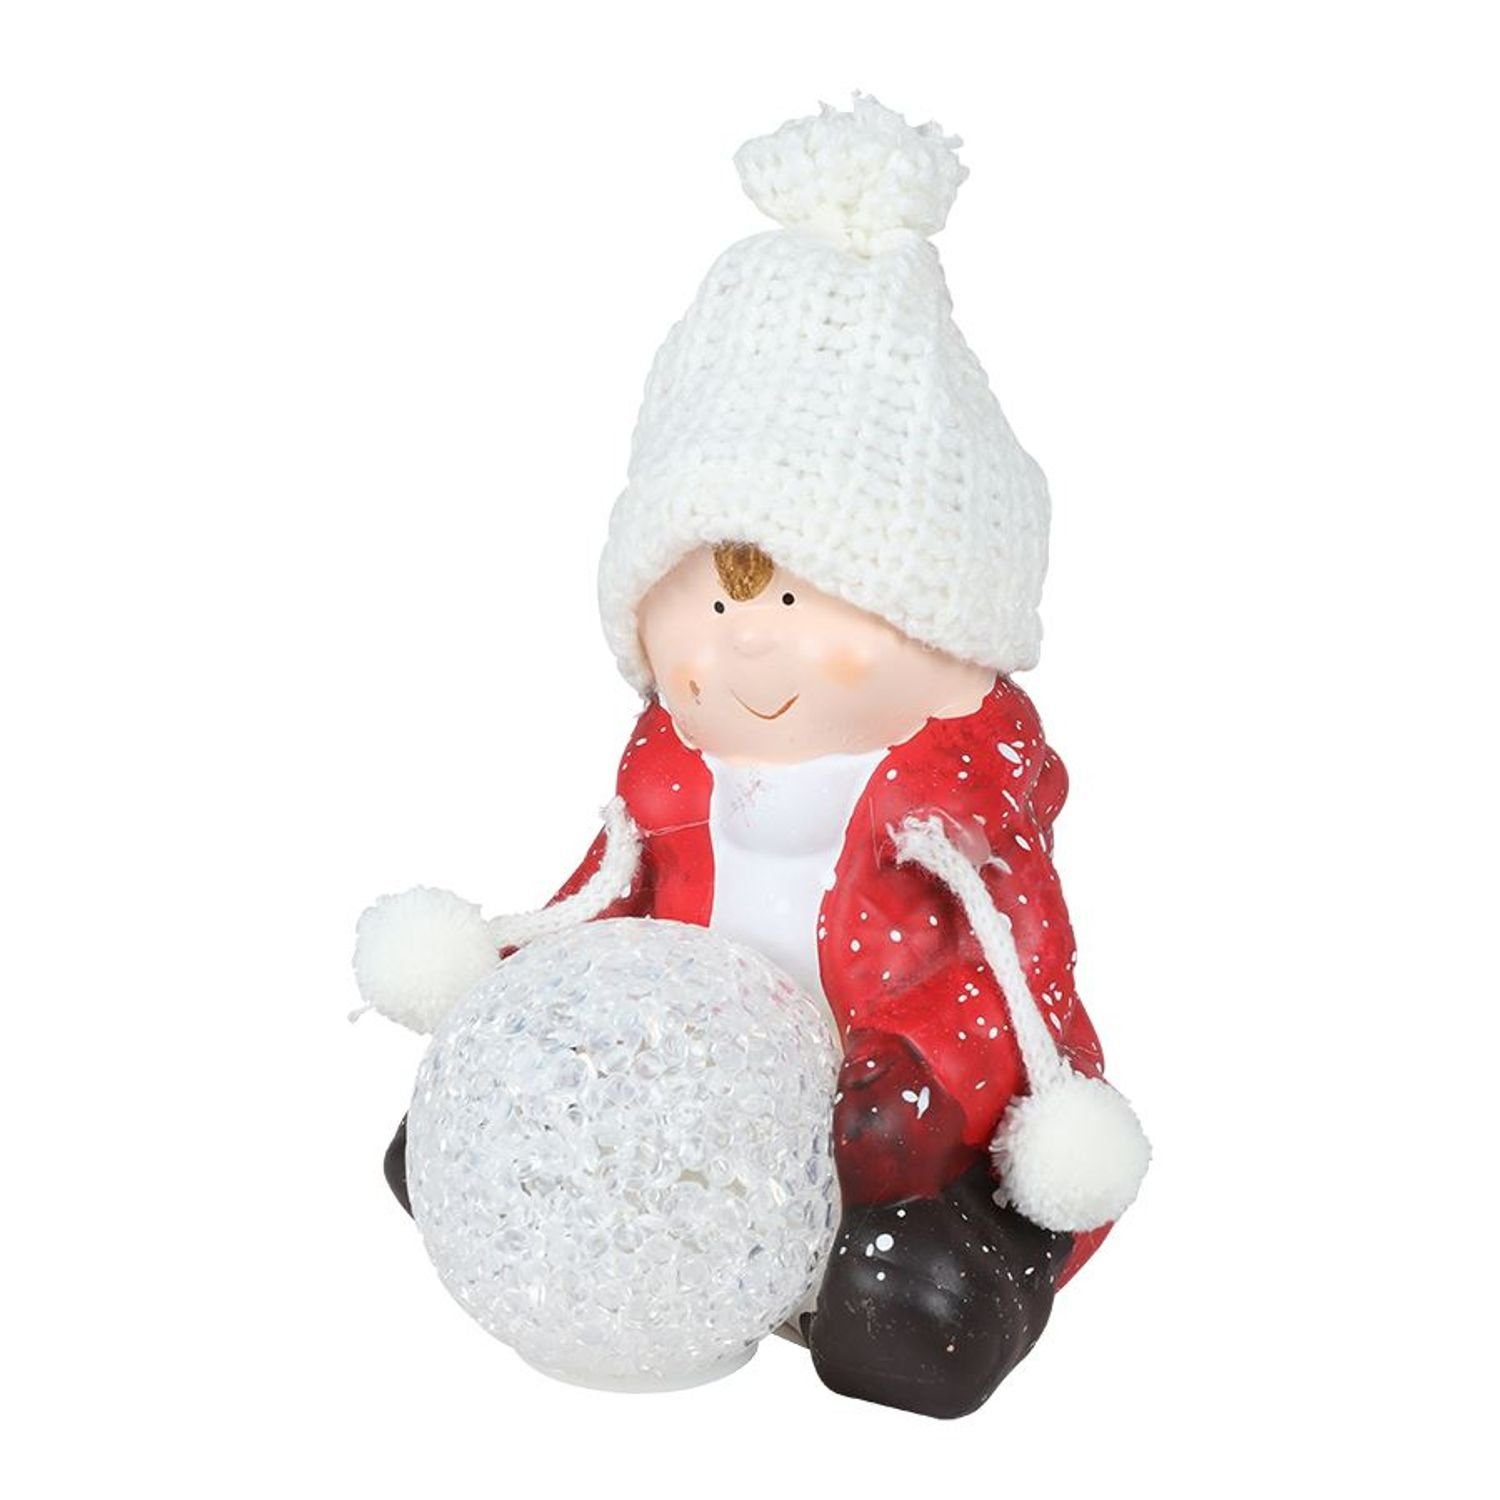 EDCO Dekofigur Keramik-Kinderfigur LEDSchneeball Dekofigur sitzend mit Weihnachtsdeko